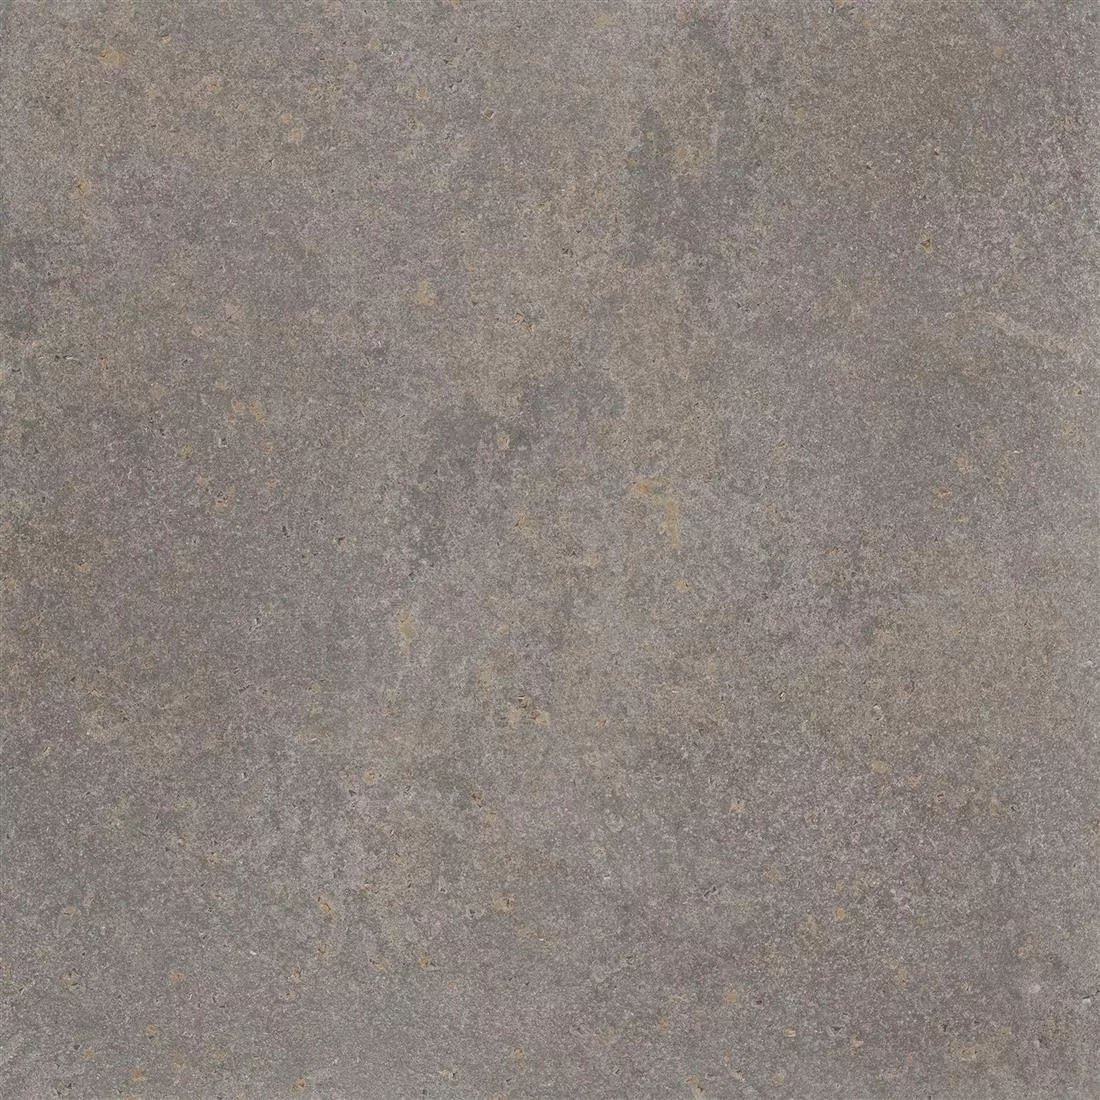 Πλακάκια Δαπέδου Πέτρινη Όψη Horizon Kαφέ 60x60cm